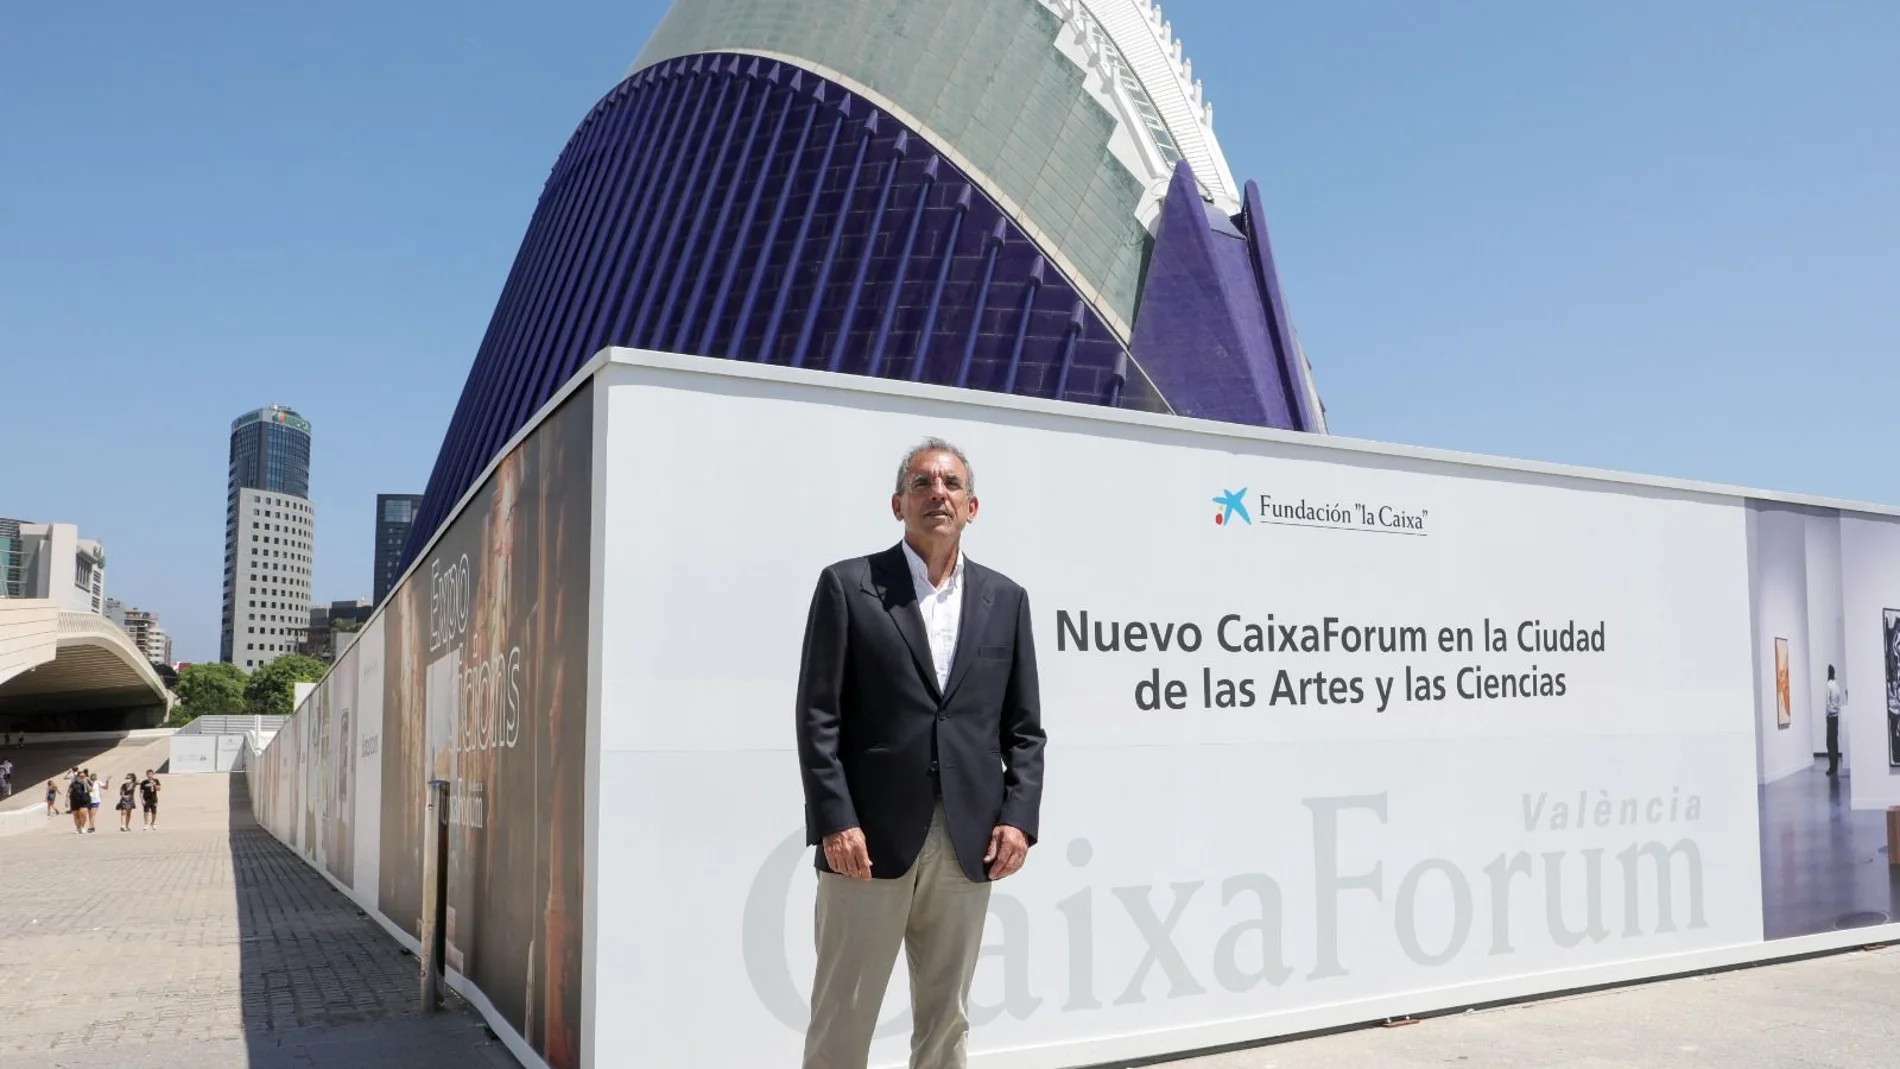 Cacsa tiene previsto incorporar Caixa Fòrum a su recinto en 2022